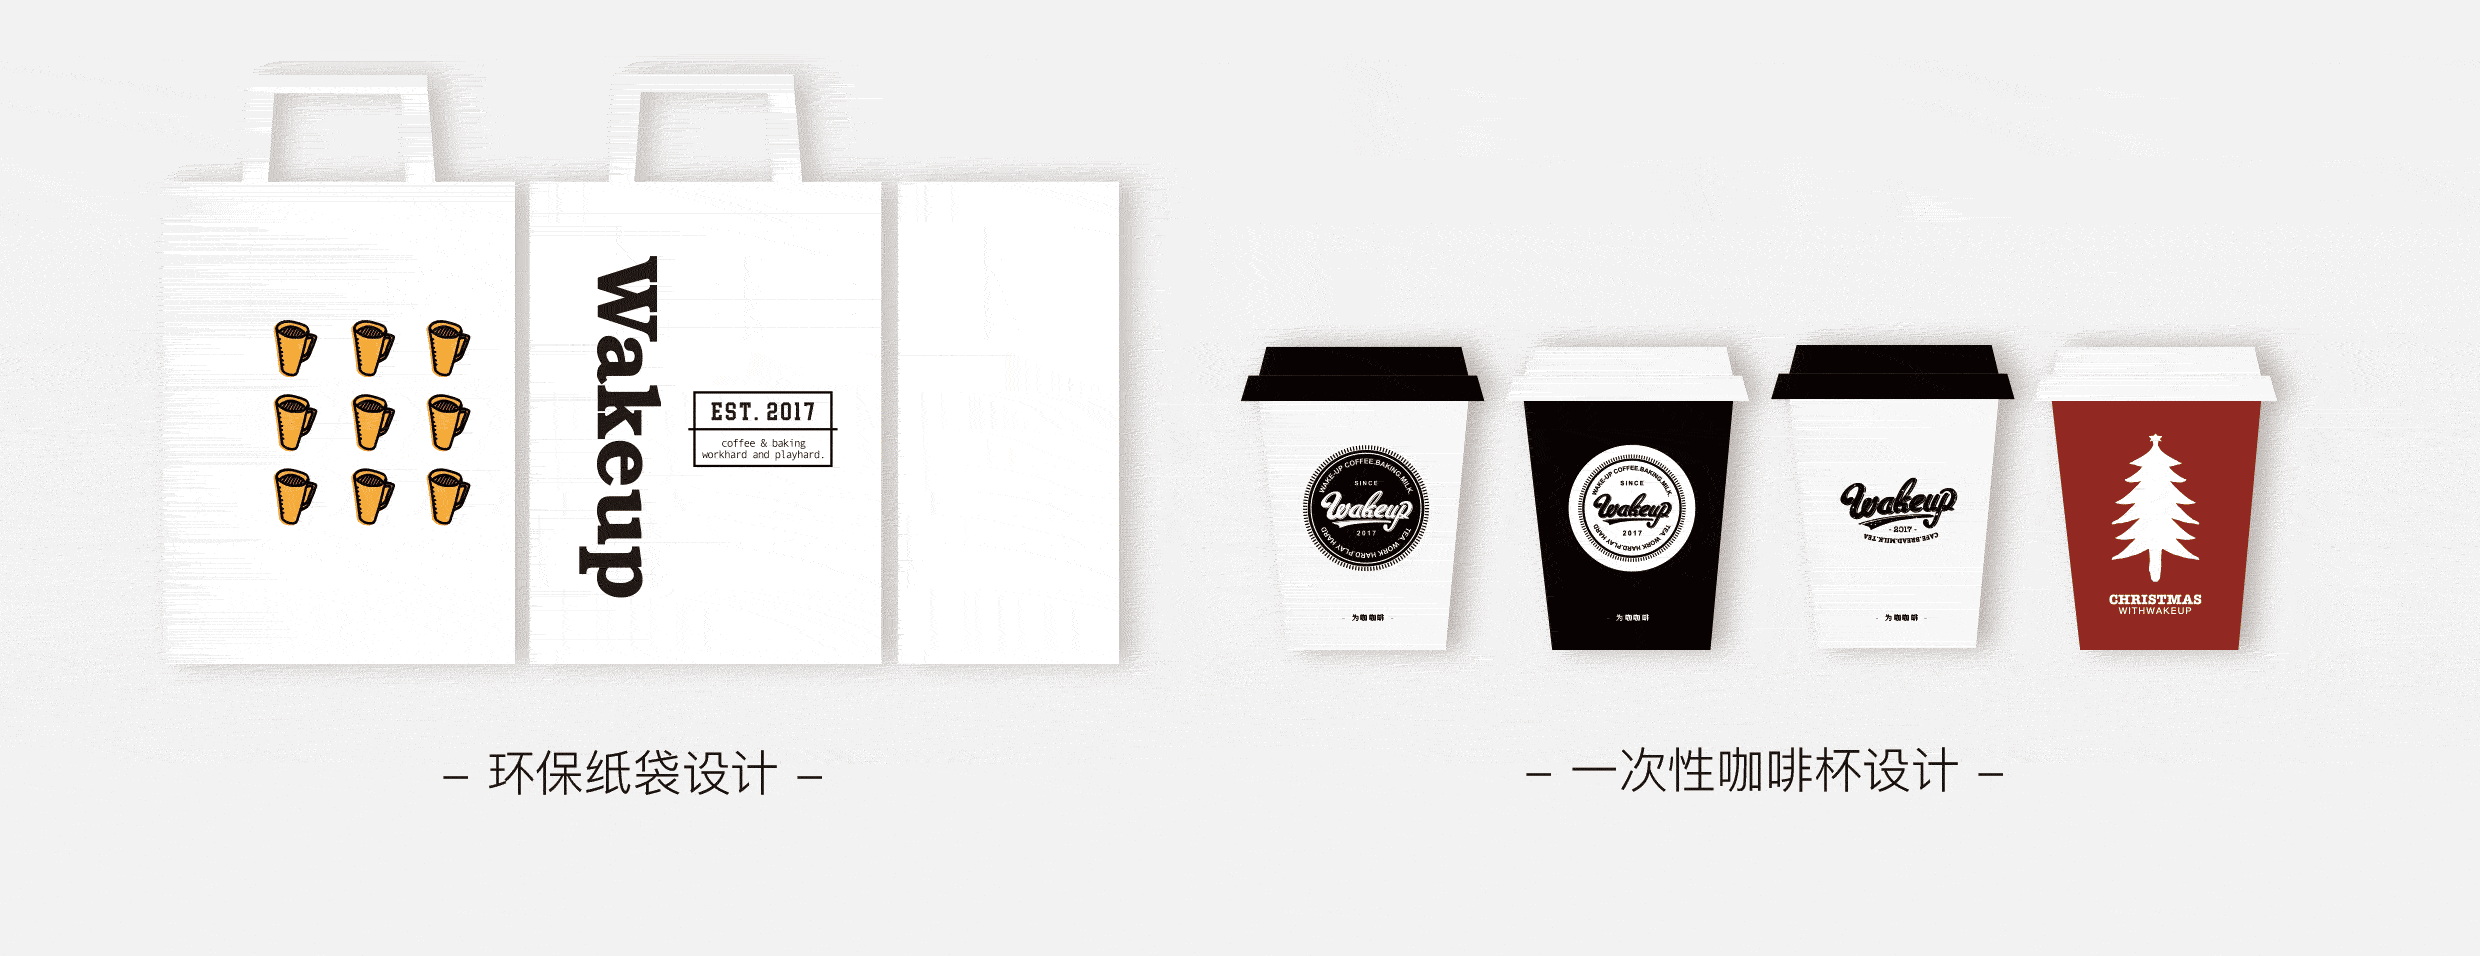 wakeup为咖咖啡馆品牌vi设计